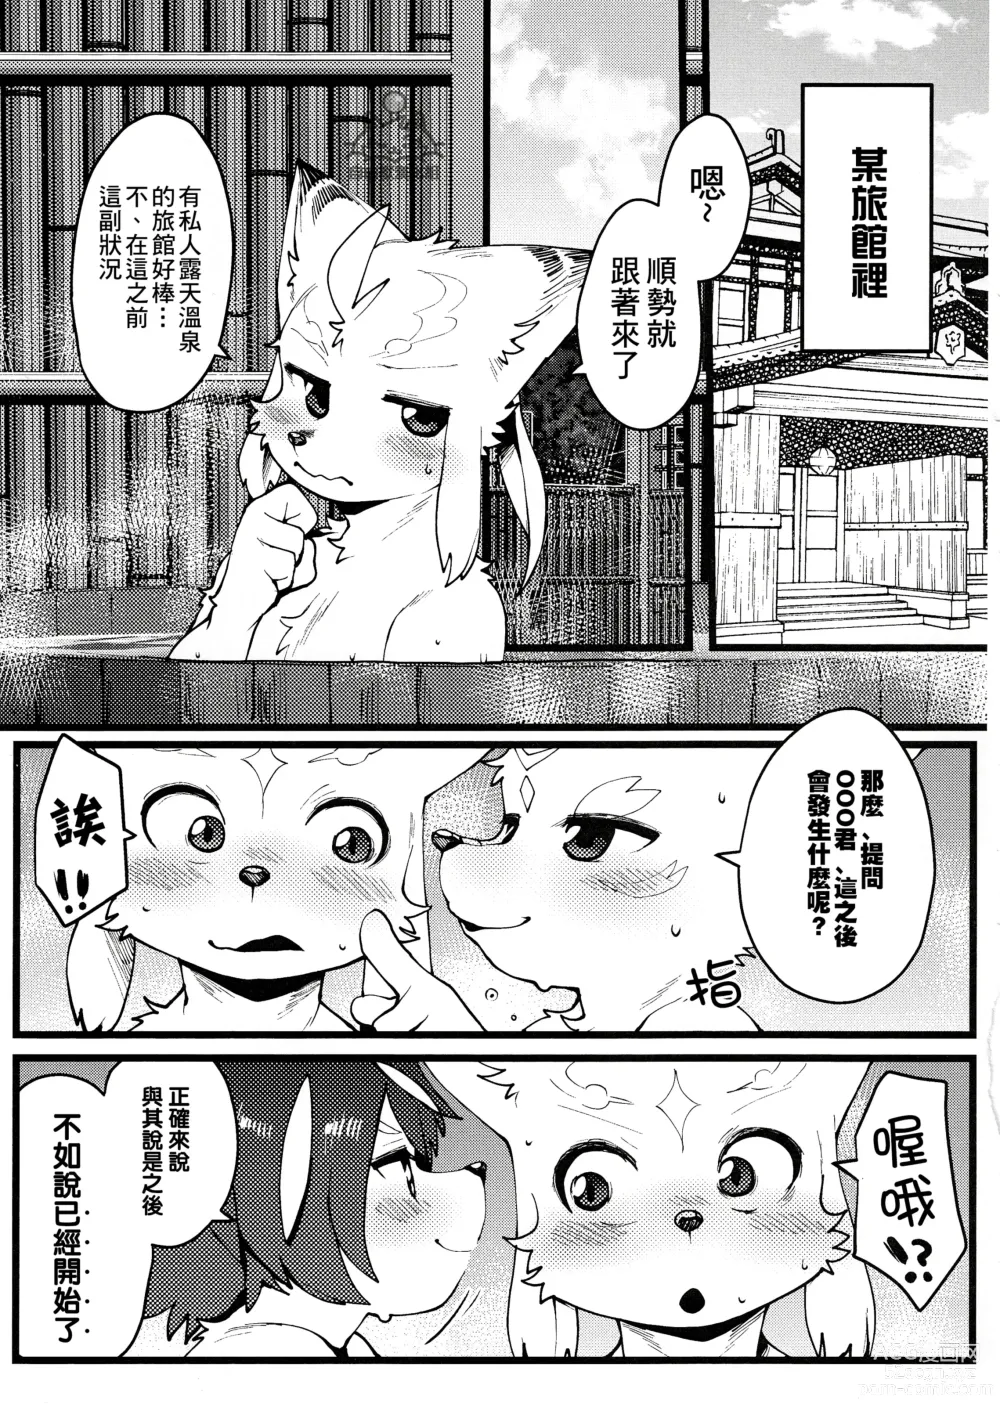 Page 25 of doujinshi 因為都是男孩子所以想做愛也沒問題吧?R